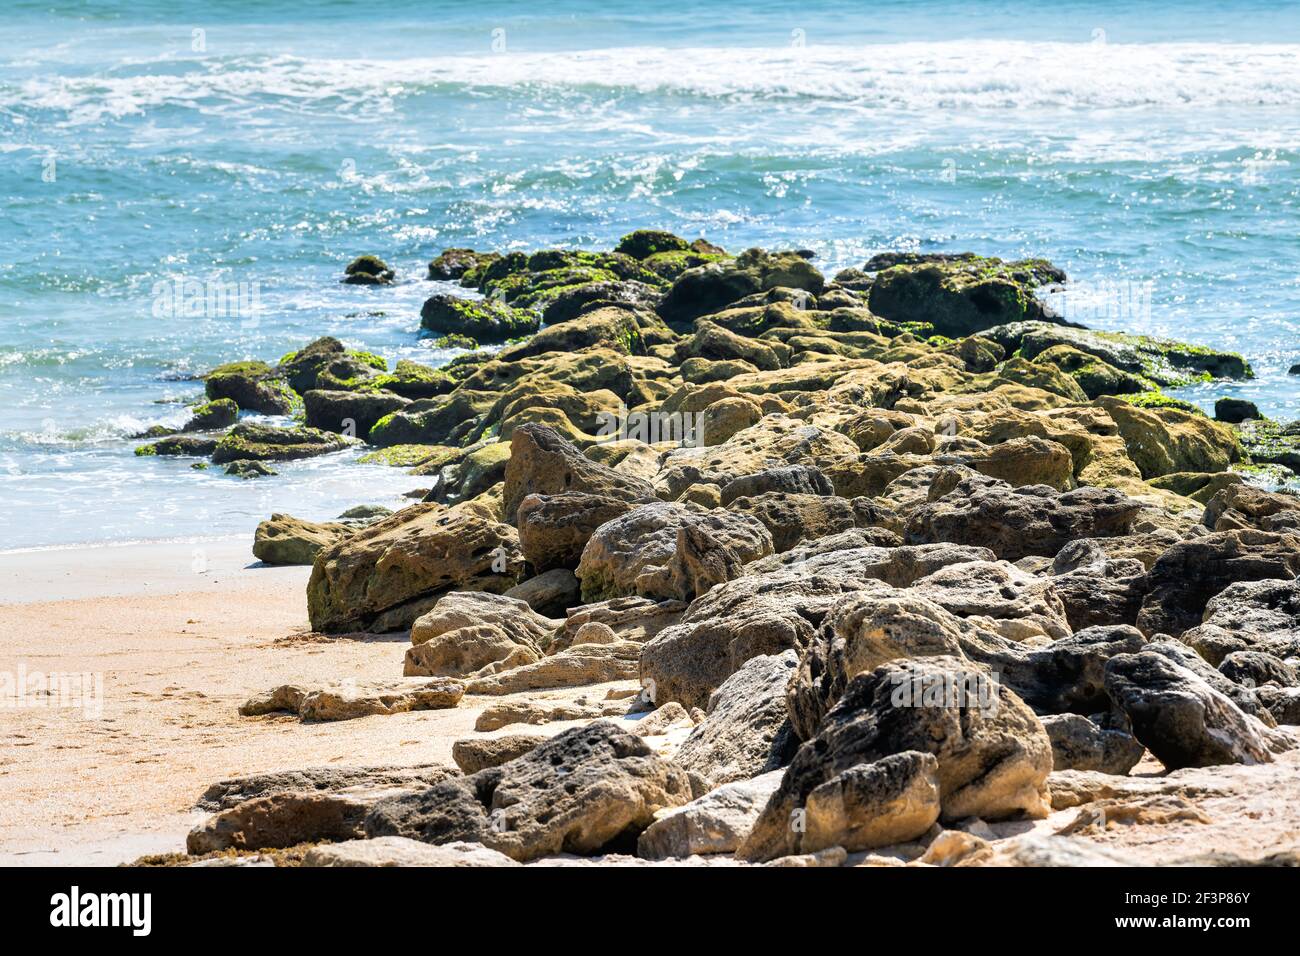 River to Sea Preserve Marineland a Palm Coast, Florida, con formazioni rocciose sulla spiaggia e verdi onde turchesi dell'oceano Atlantico entro il mese di agosto Foto Stock